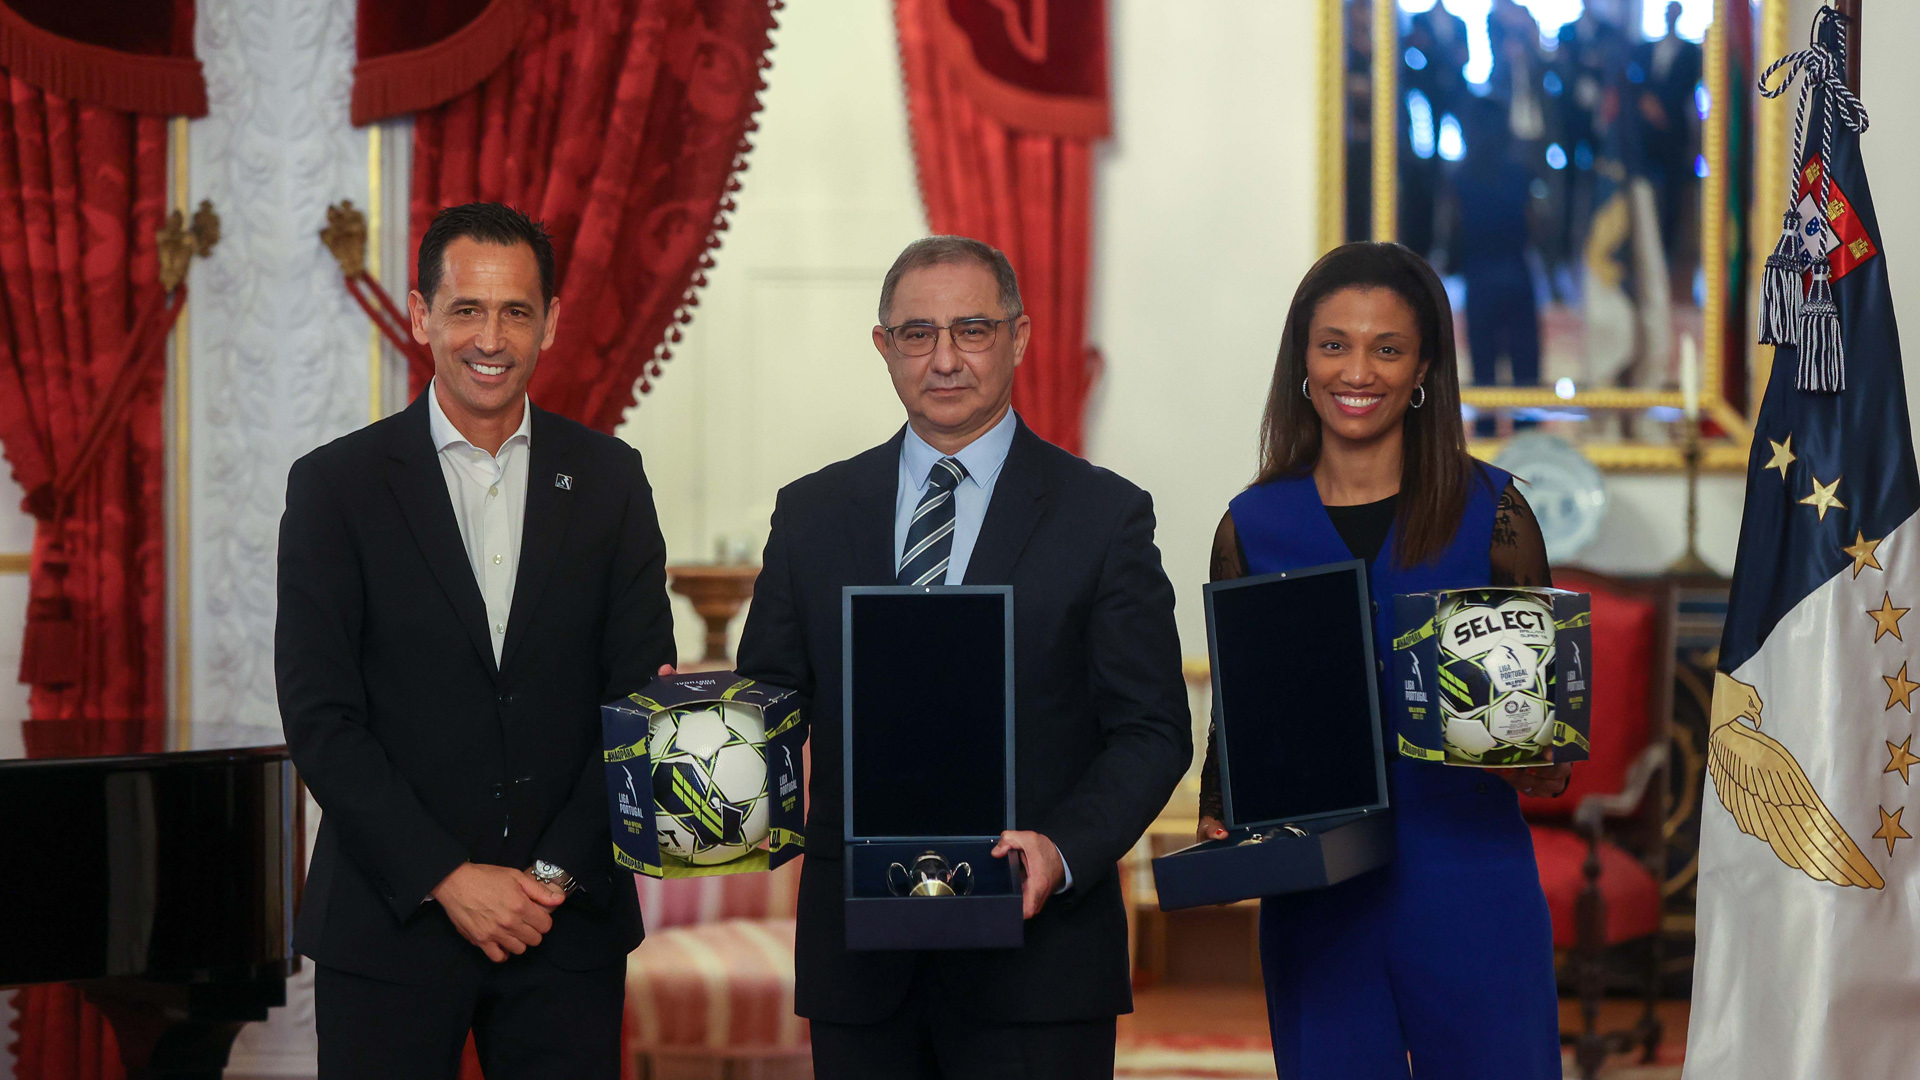 José Manuel Bolieiro satisfeito com “projeto comum” para realização nos Açores da ‘Final Four’ da Taça da Liga